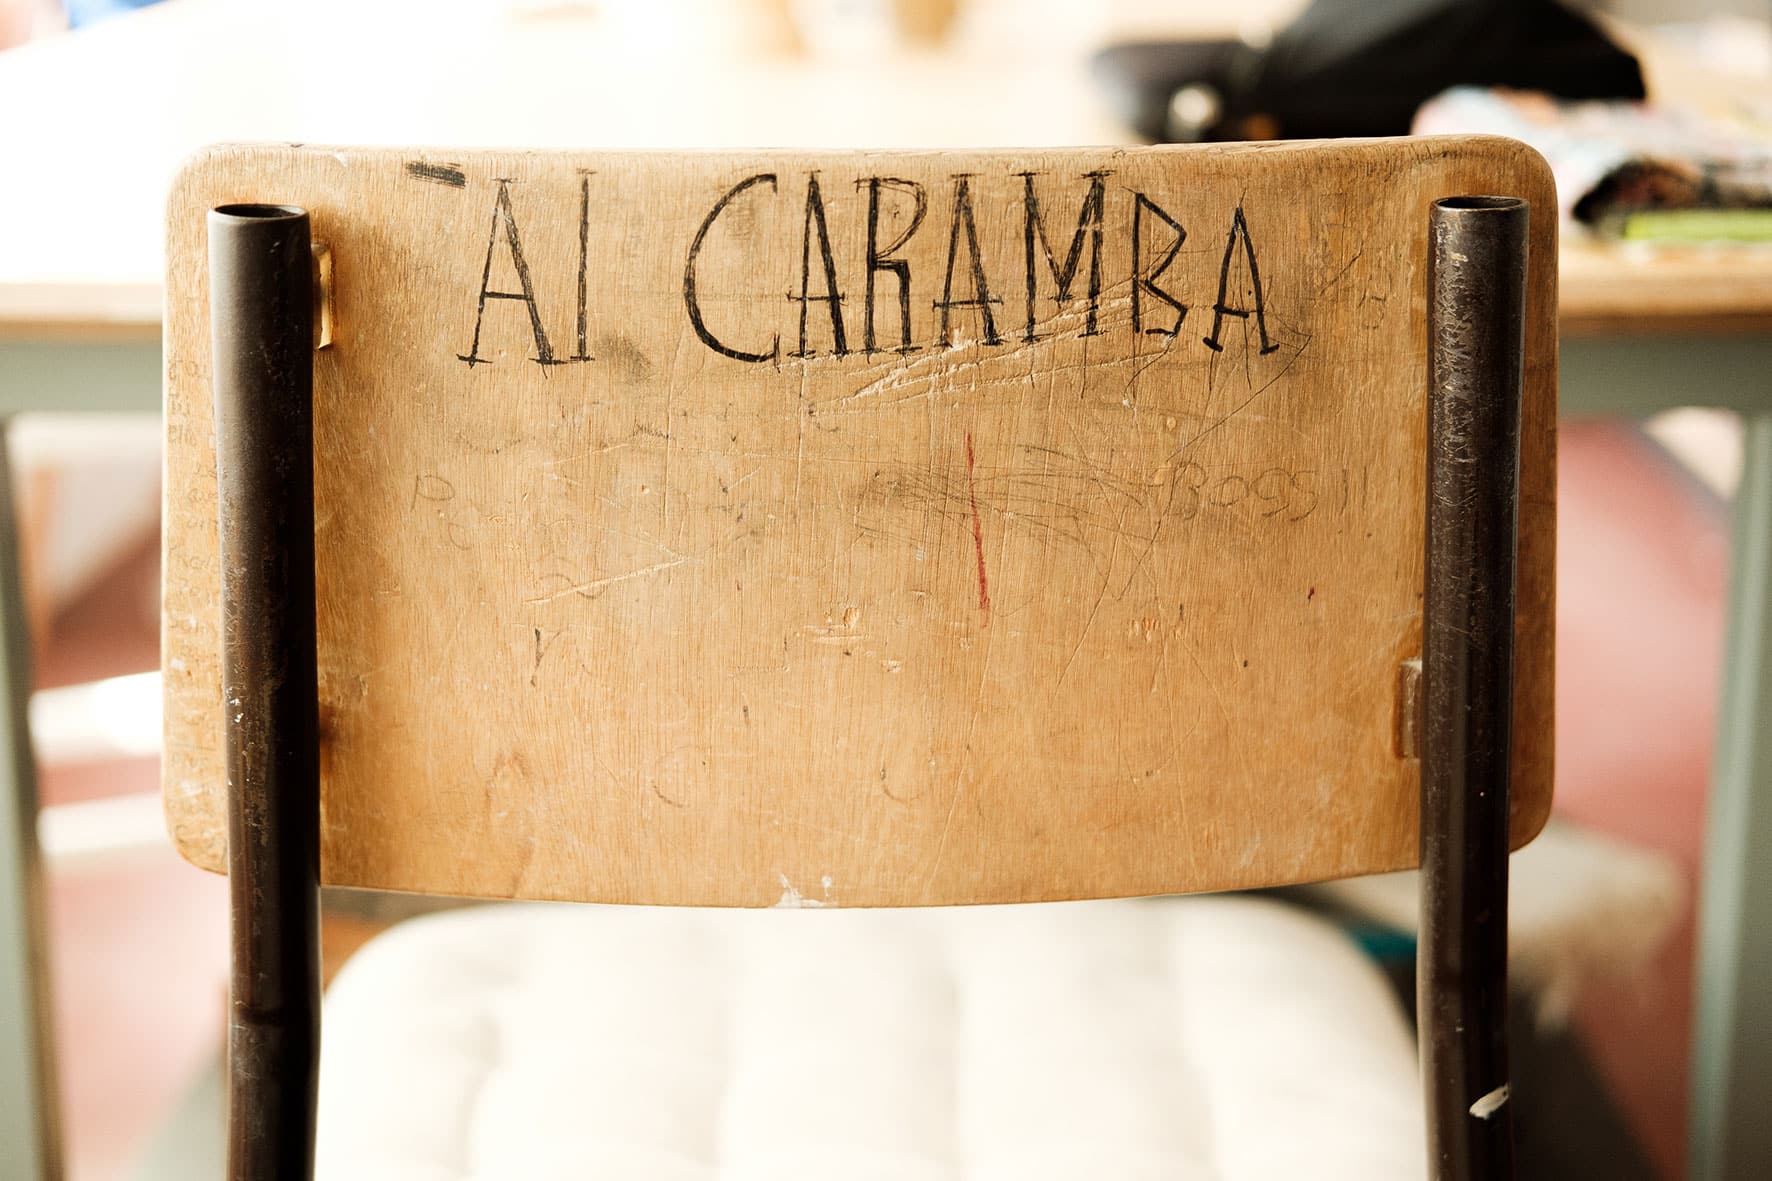 Encosto de cadeira de madeira, onde se encontra escrito manualmente a frase "Ai Caramba" em letras maiúsculas.